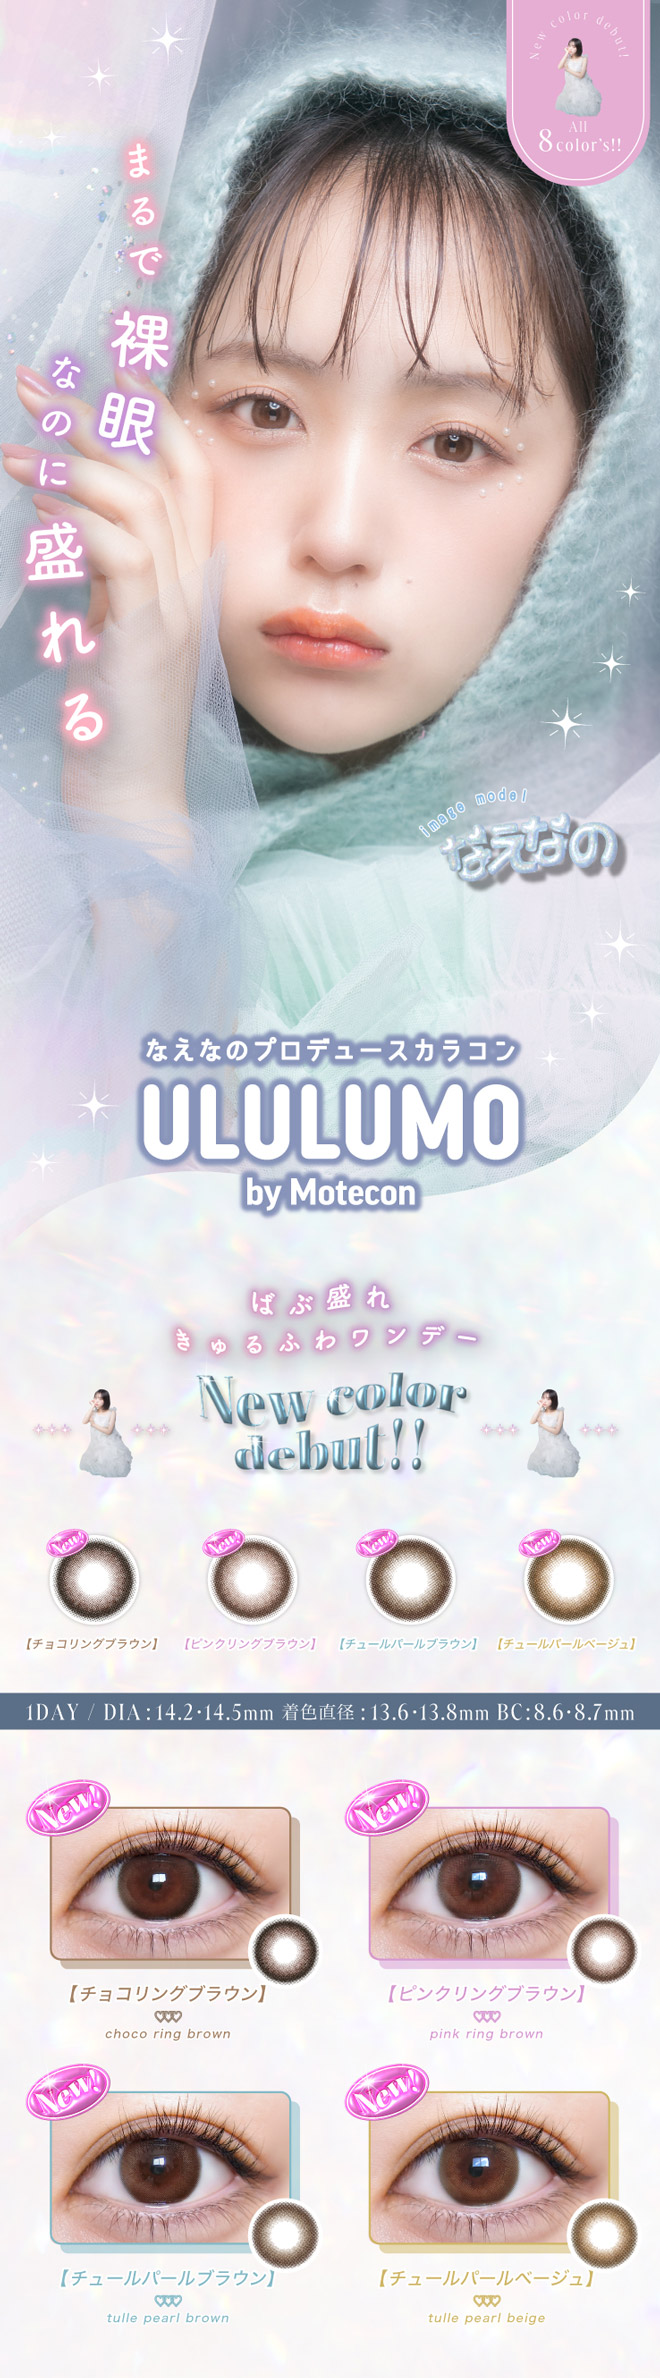 ウルルモ バイ モテコン りすさんちゅるちゅる 10枚入 ULULUMO by Motecon